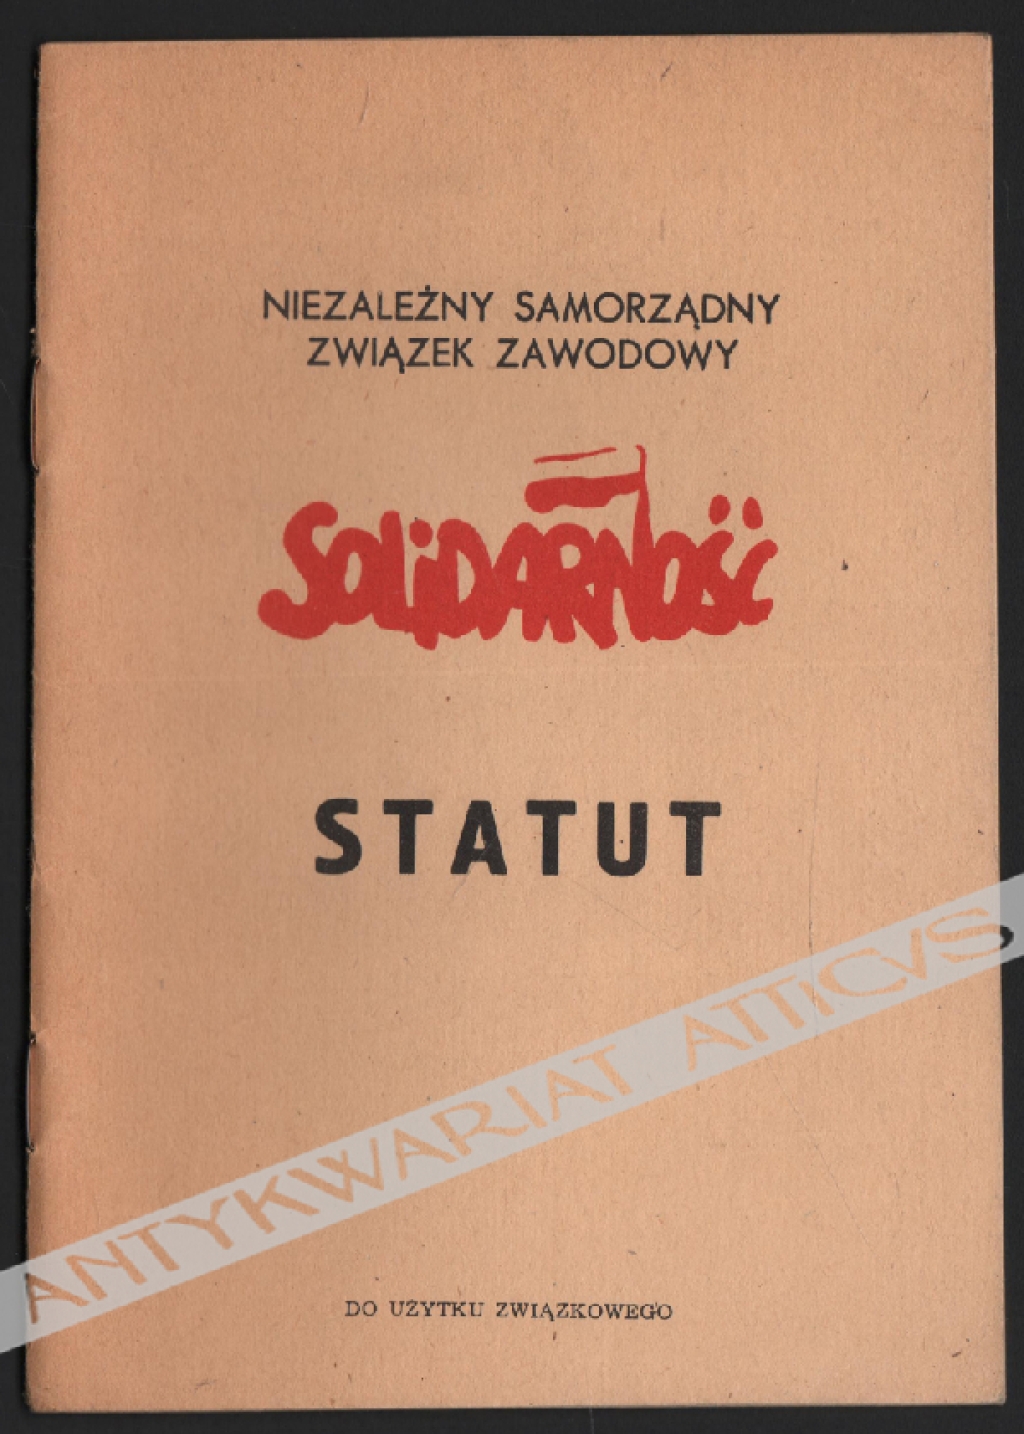 Niezależny Samorządny Związek Zawodowy "Solidarność". Statut